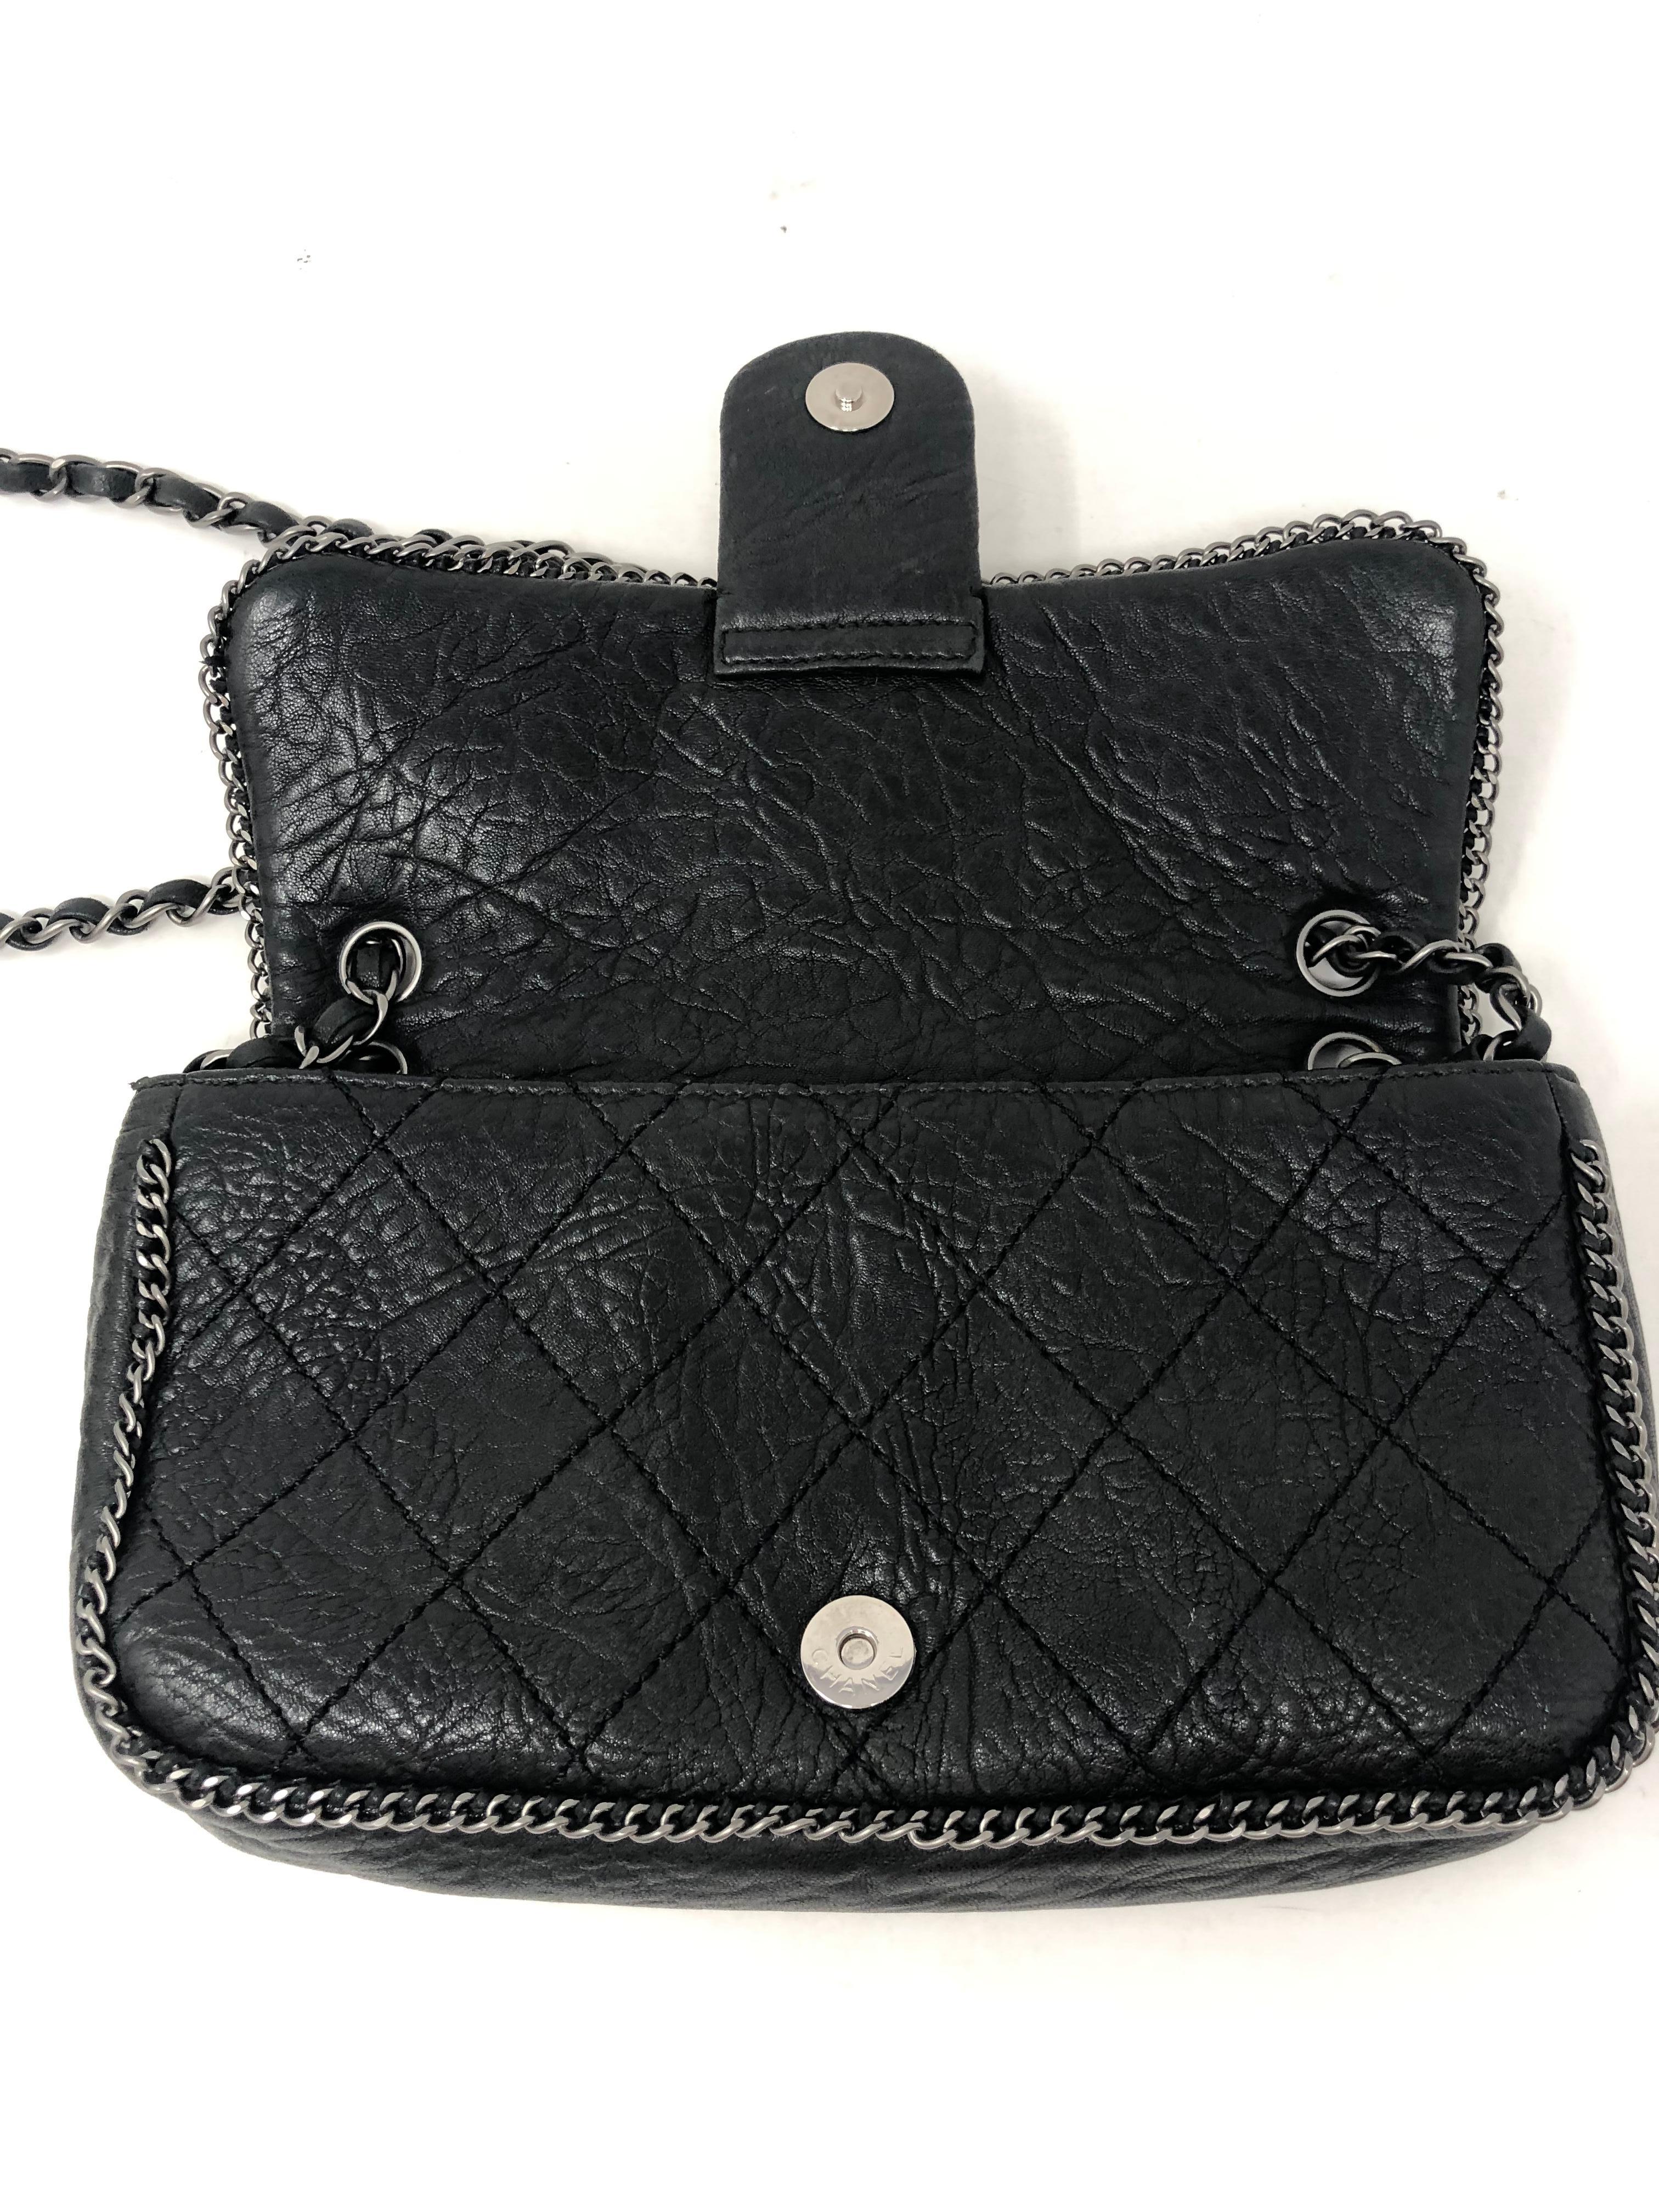 Chanel Black Leather Lion Bag  5